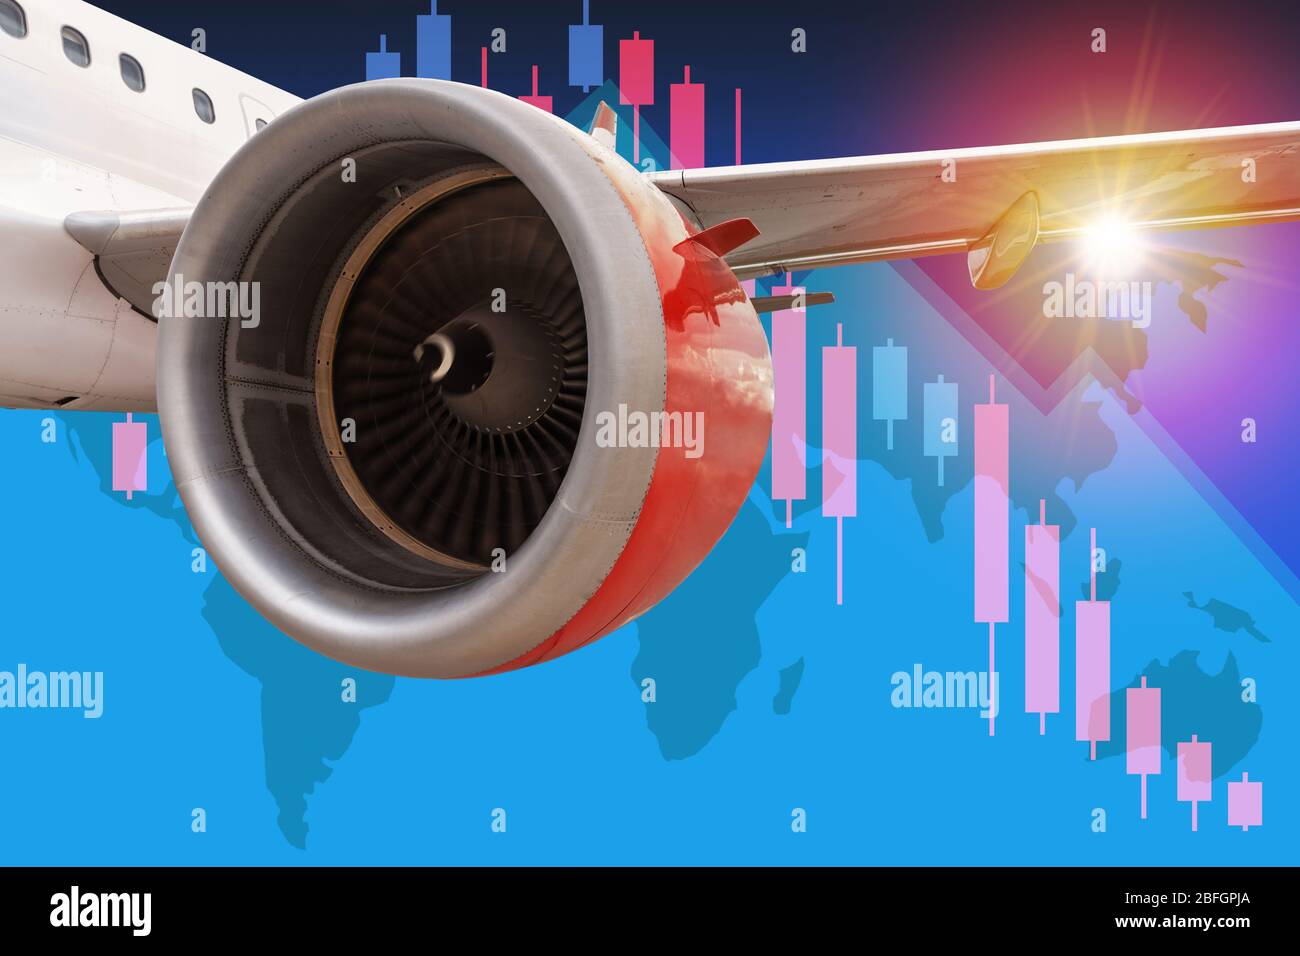 Konzept der Luftfahrt-und Reisebranche Geschäft in der Krise mit kommerziellen Fluggesellschaft in Flug-und Tourismusbranche über rückläufige Aktienkursen und Welt Stockfoto